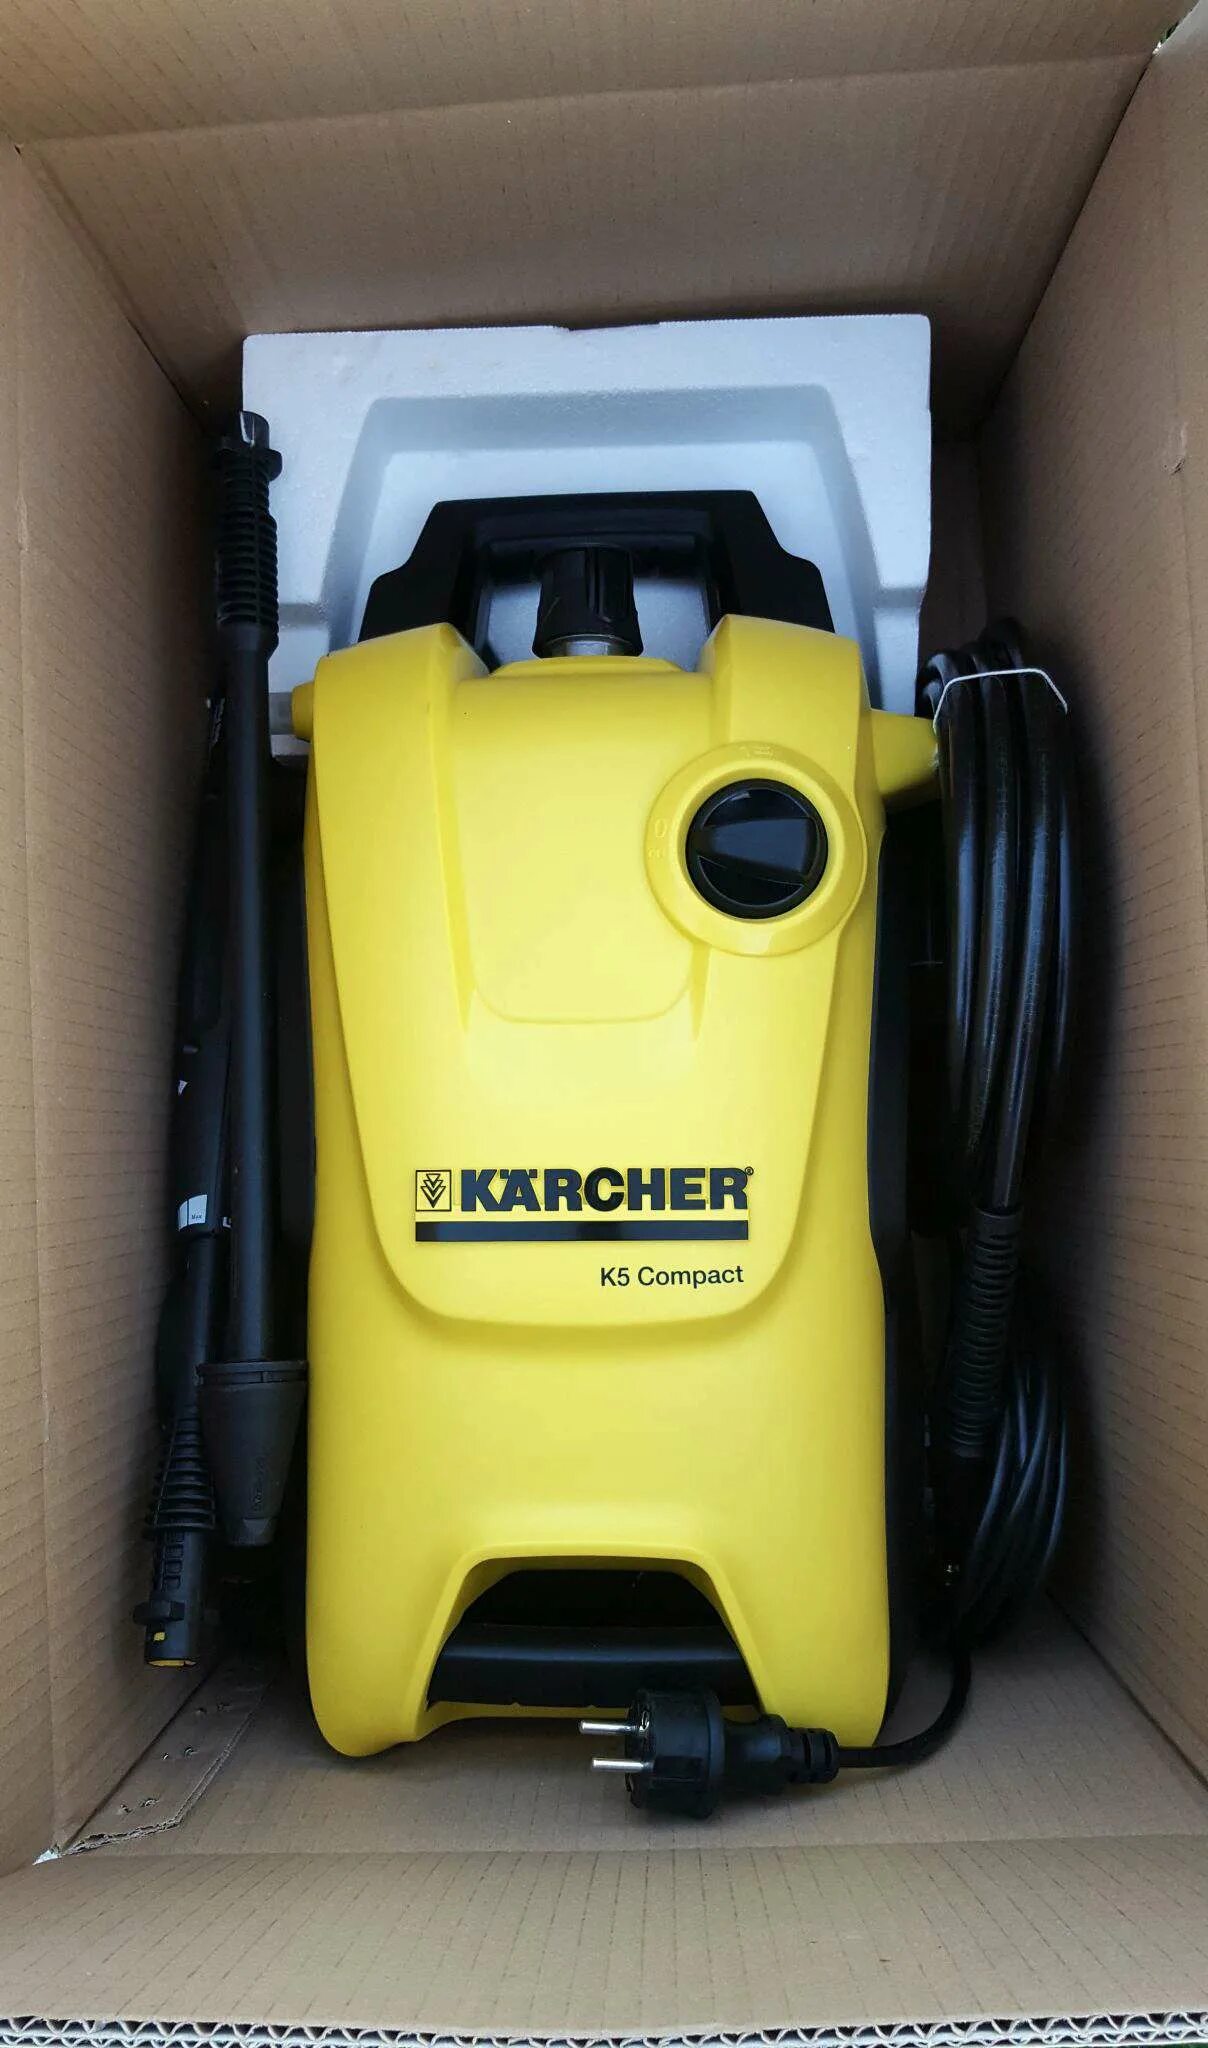 Мойка Karcher k 5 Compact. Минимойка Karcher к5 Compact. Мойка высокого давления Karcher к 5. 1.630-720.0 Karcher k 5 Compact. Купить керхер б у